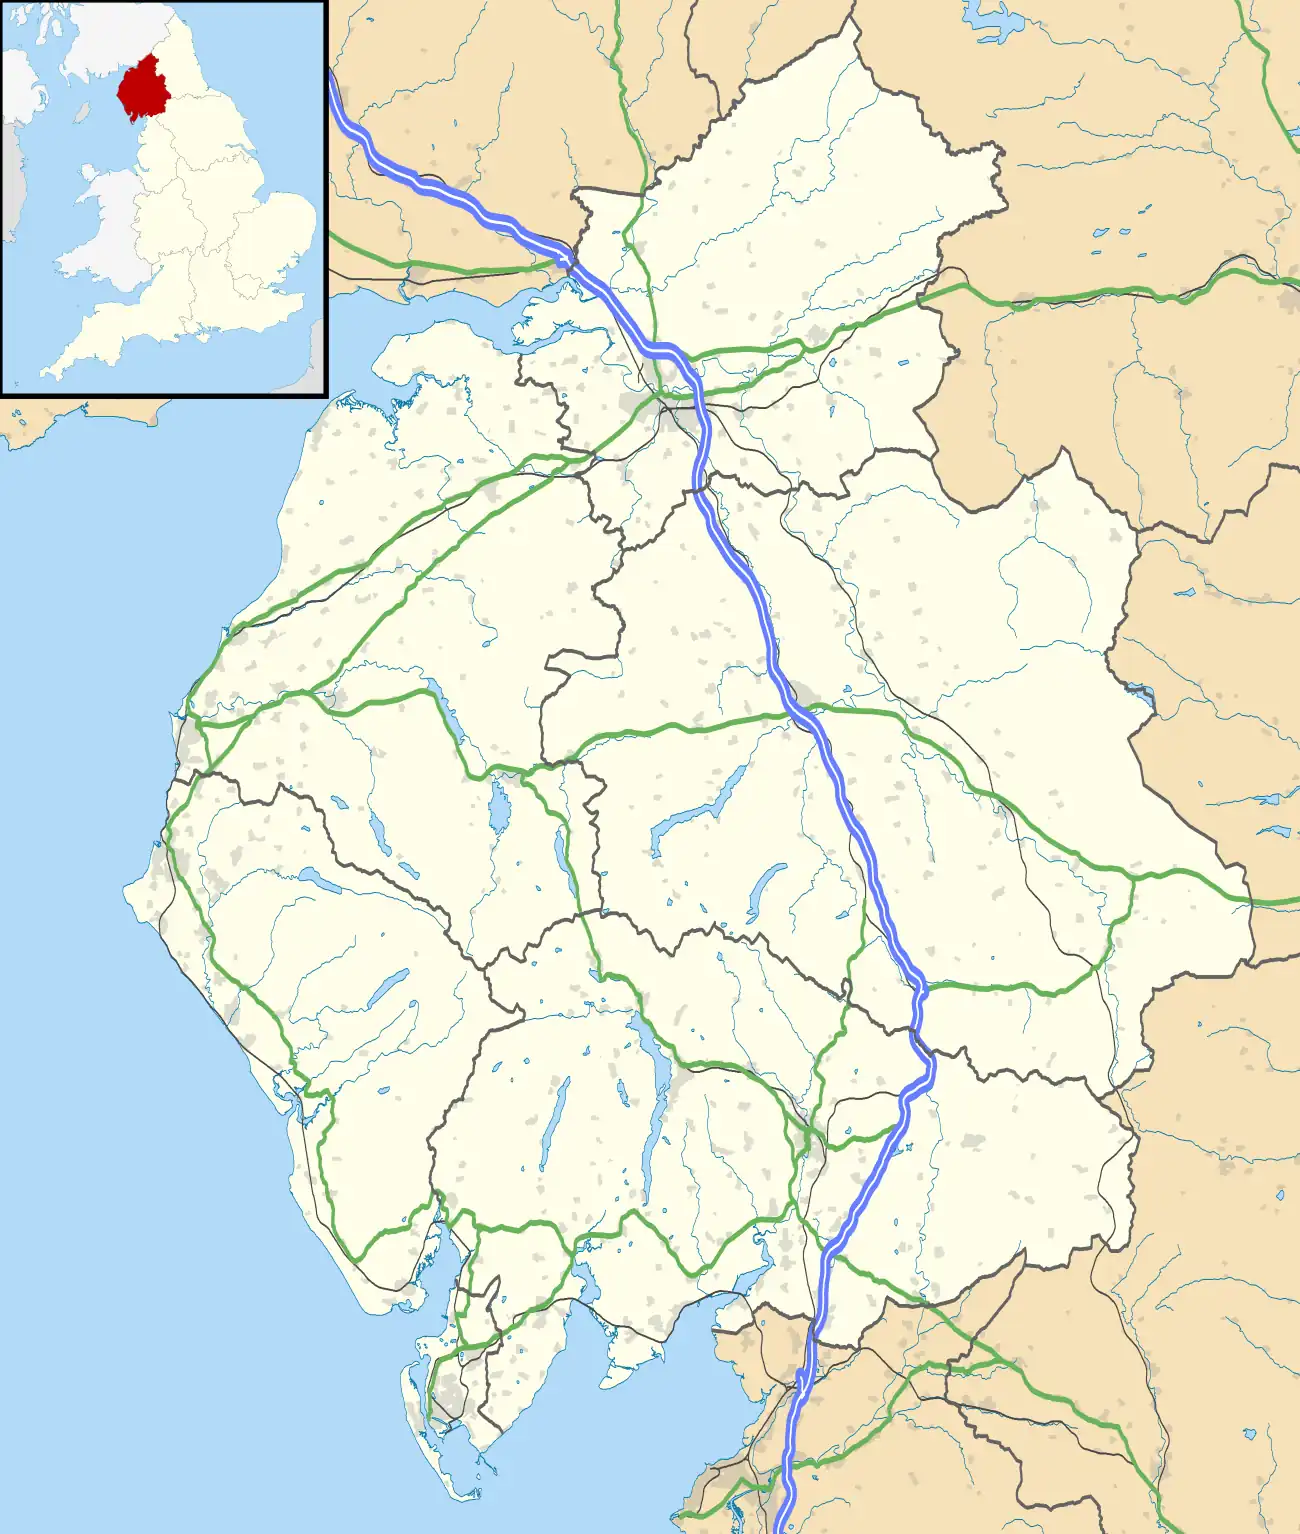 Appleby is located in Cumbria